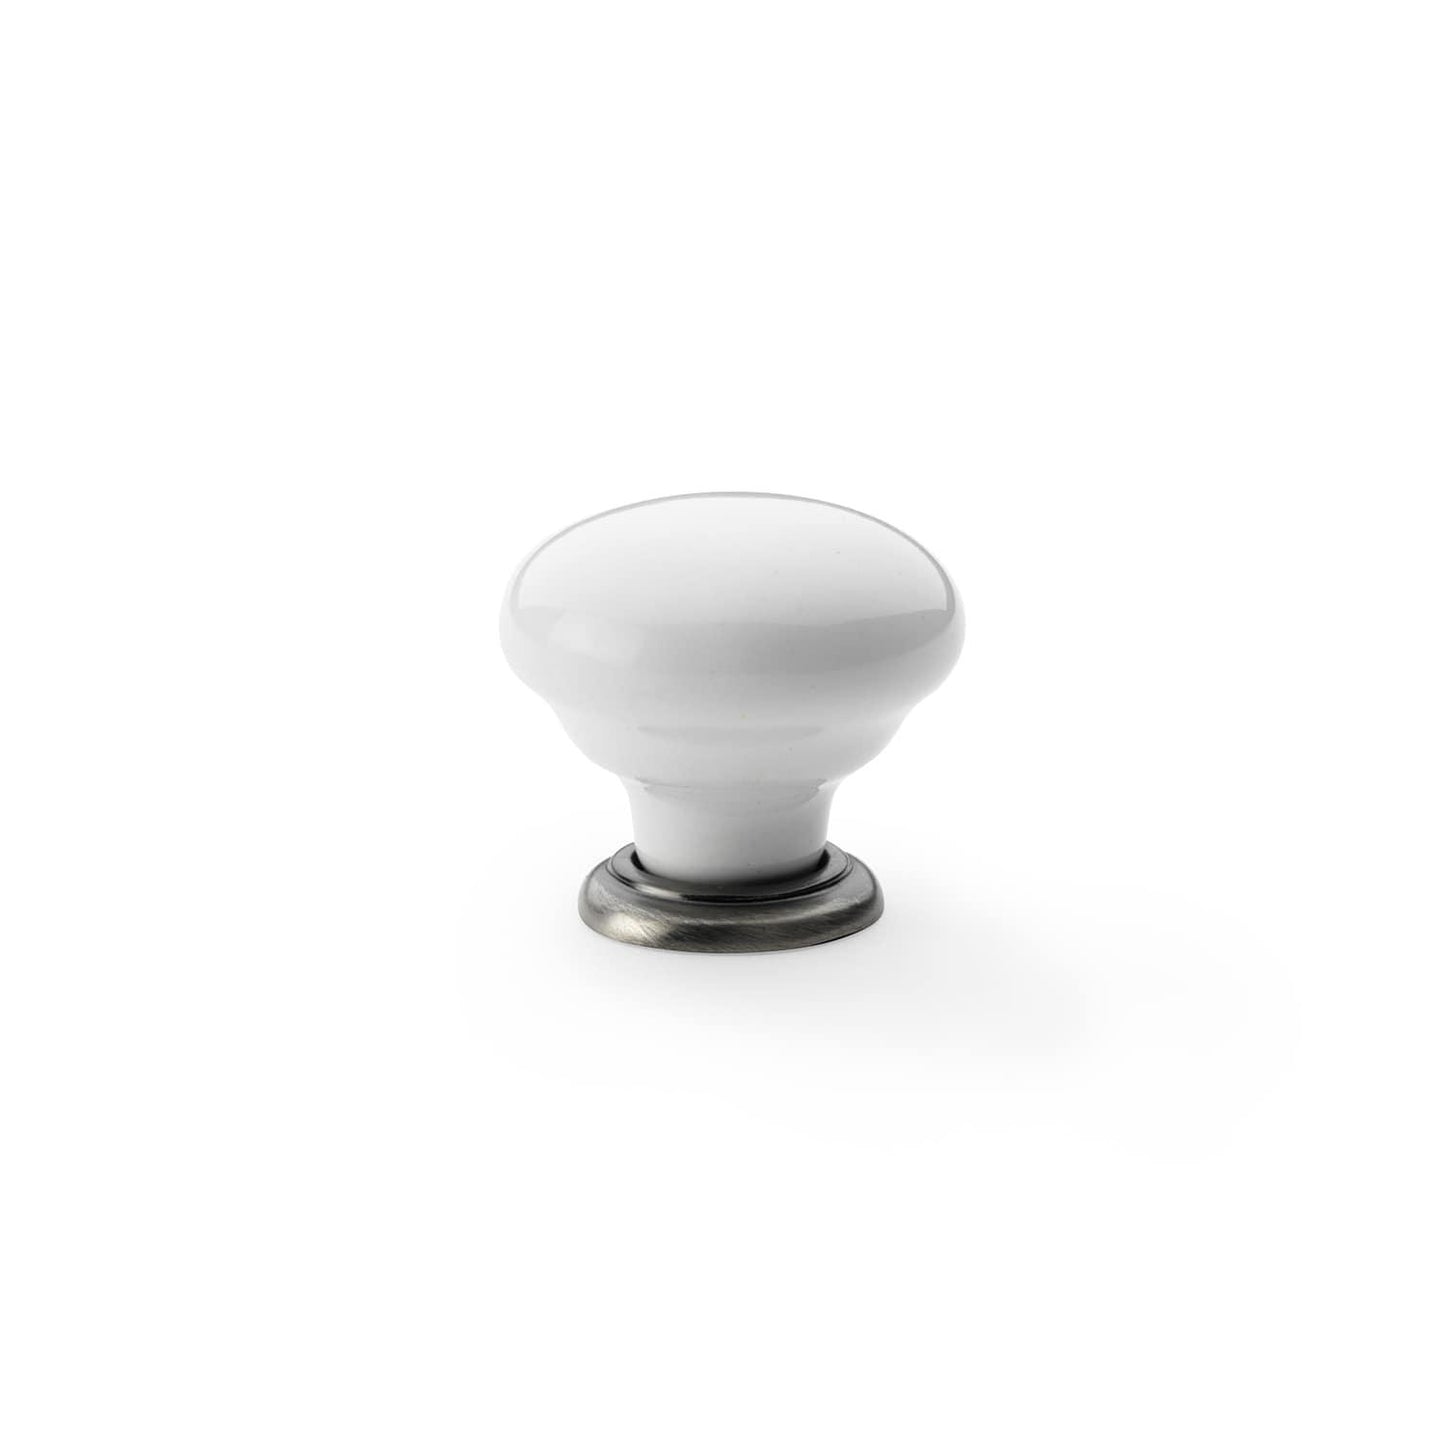 Ceramic Cabinet Knob - Bilden Home & Hardware Market